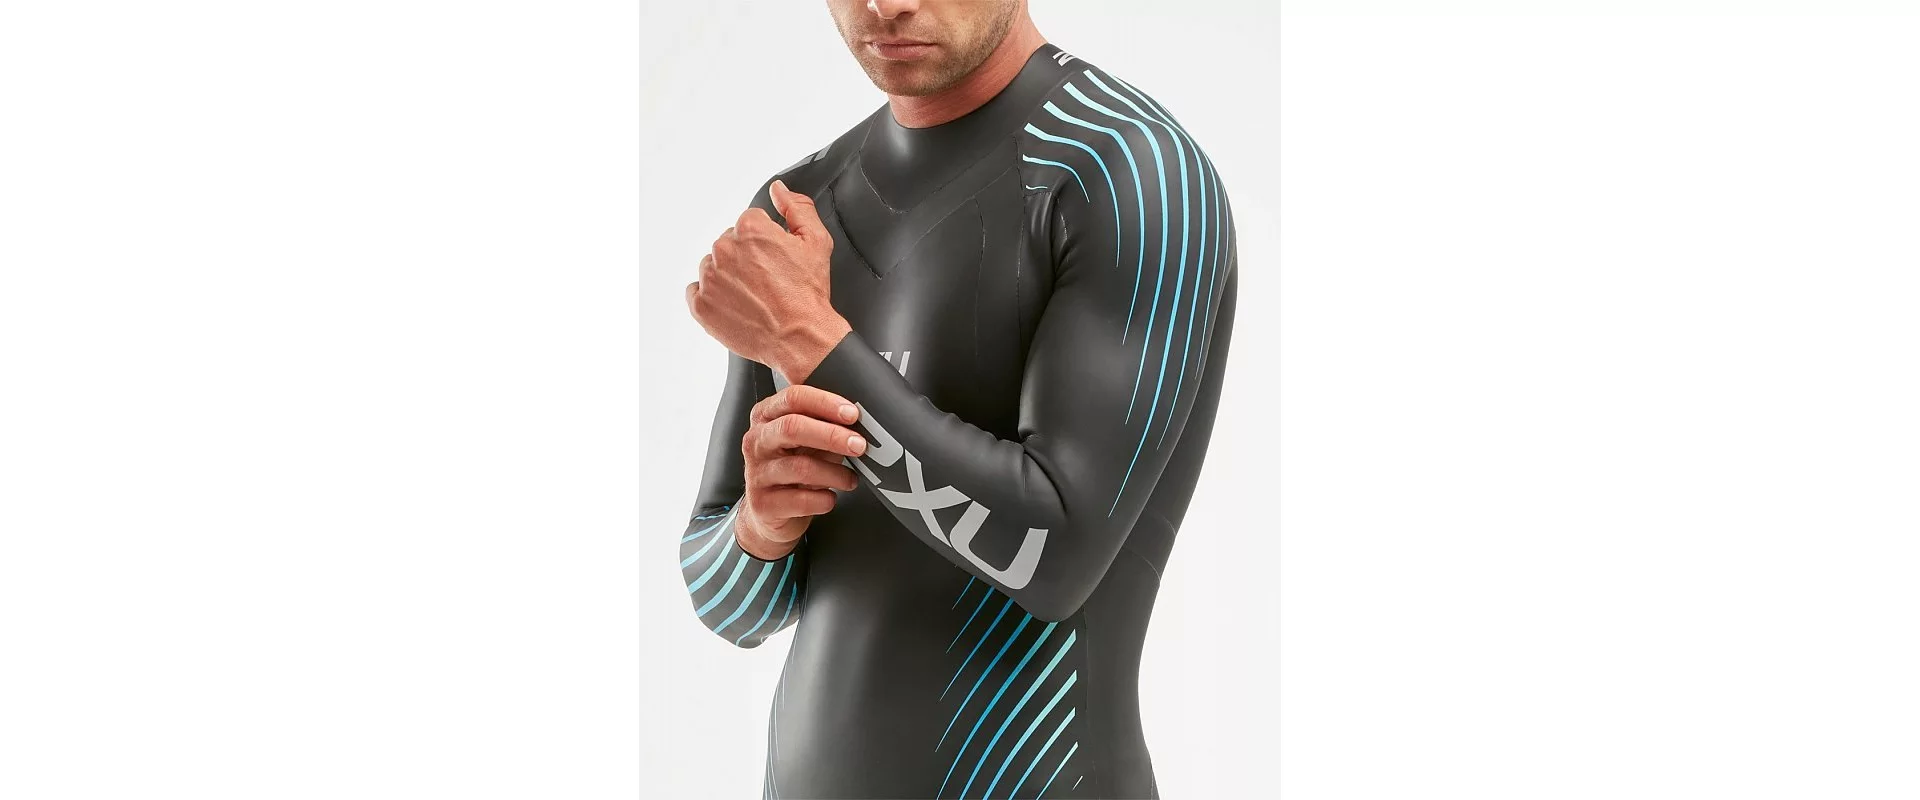 2XU P:1 Propel Wetsuit / Мужской гидрокостюм для триатлона и открытой воды фото 4